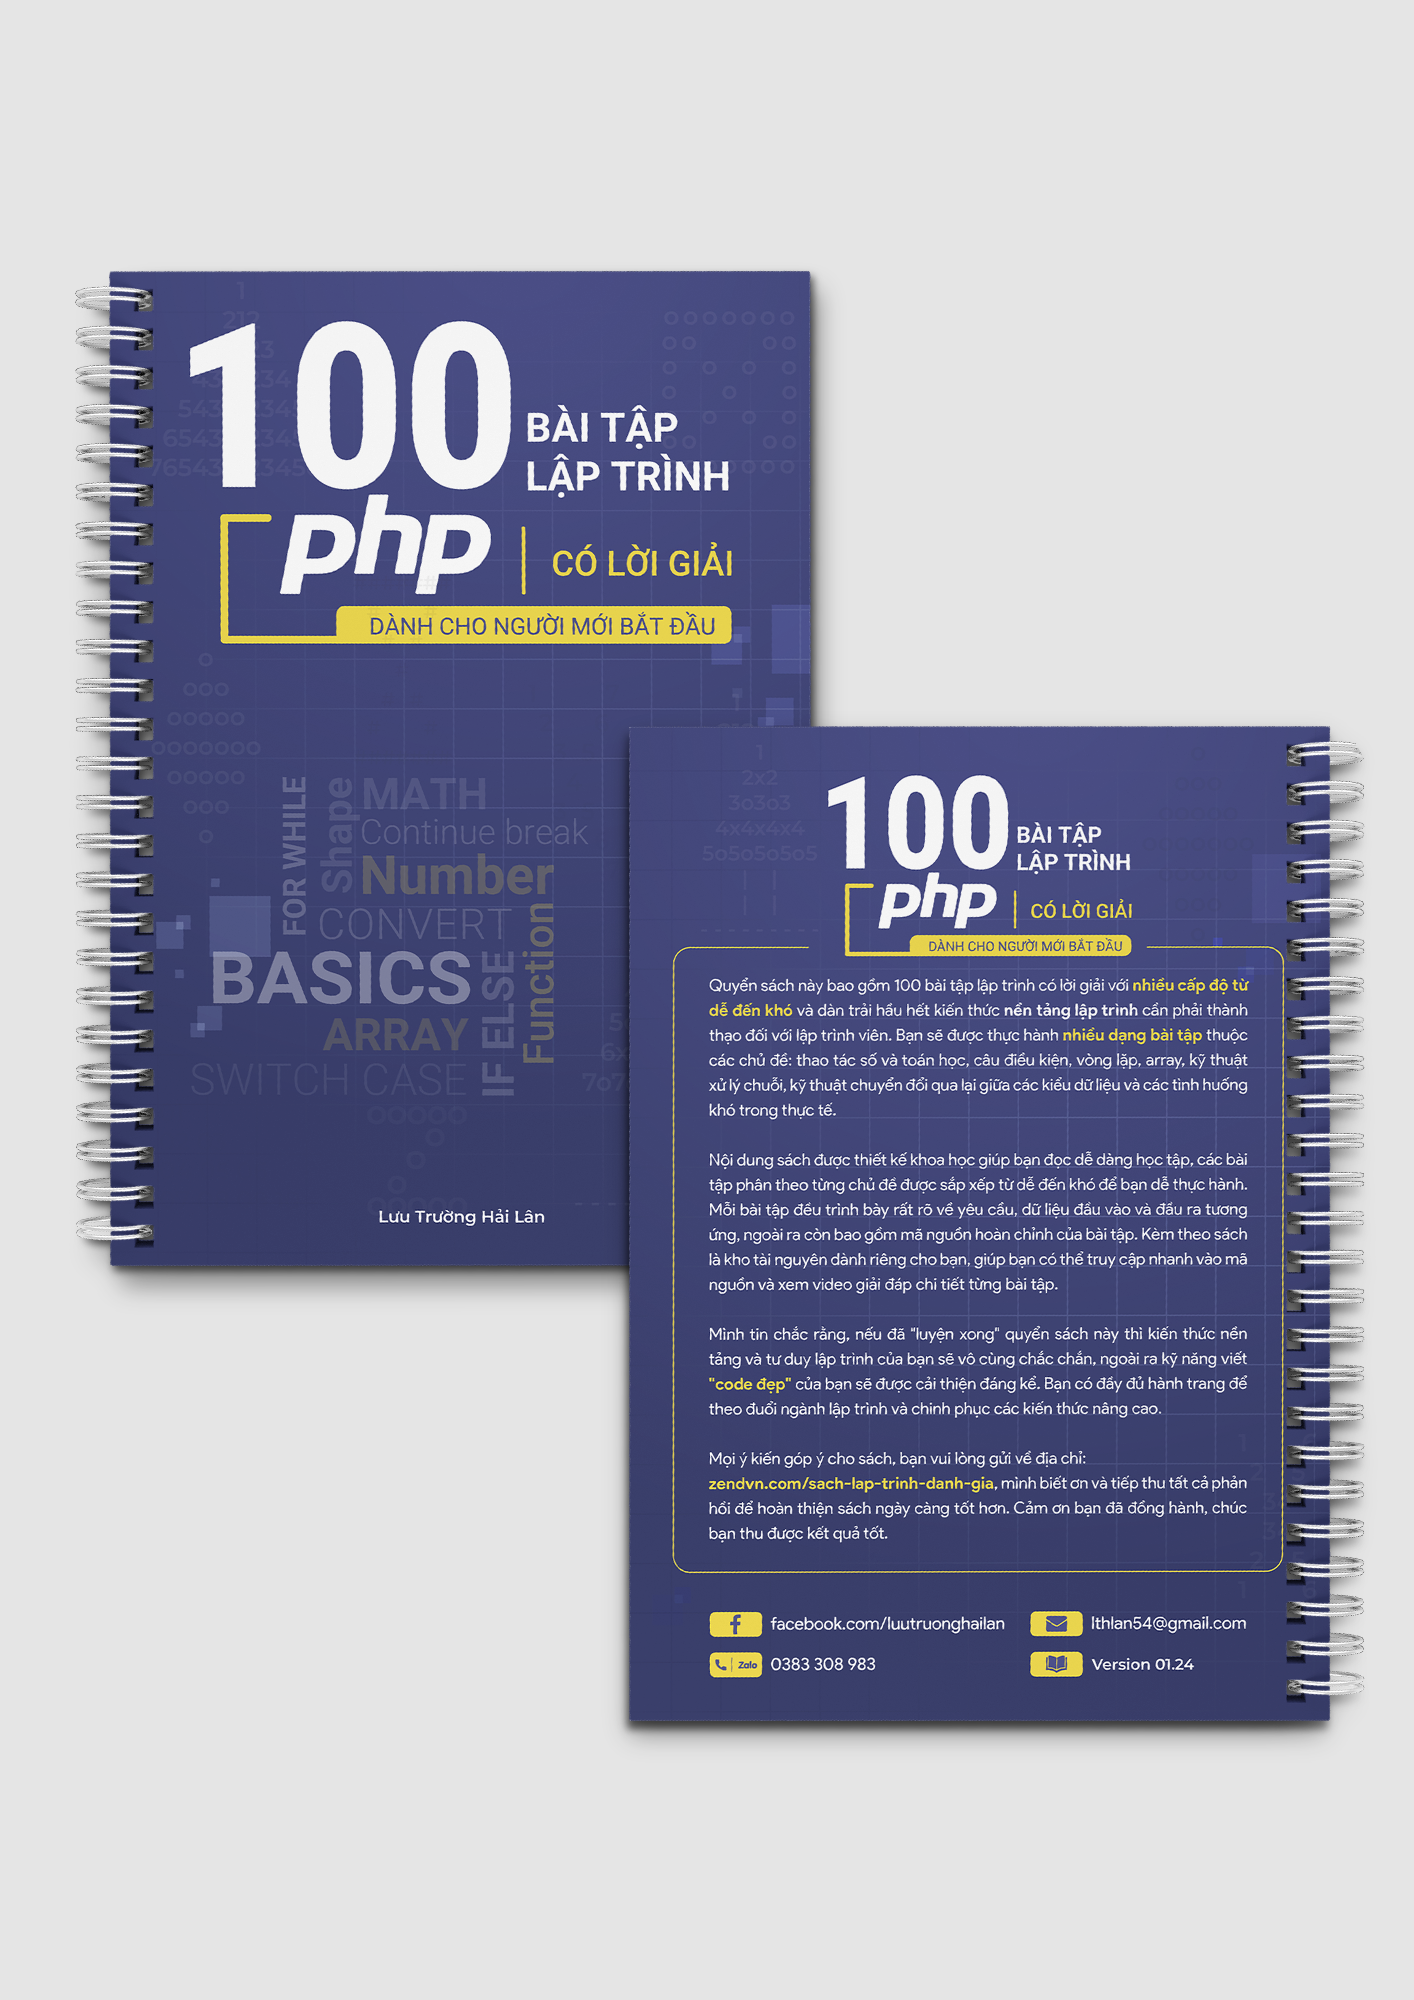 100 bài tập PHP có lời giải